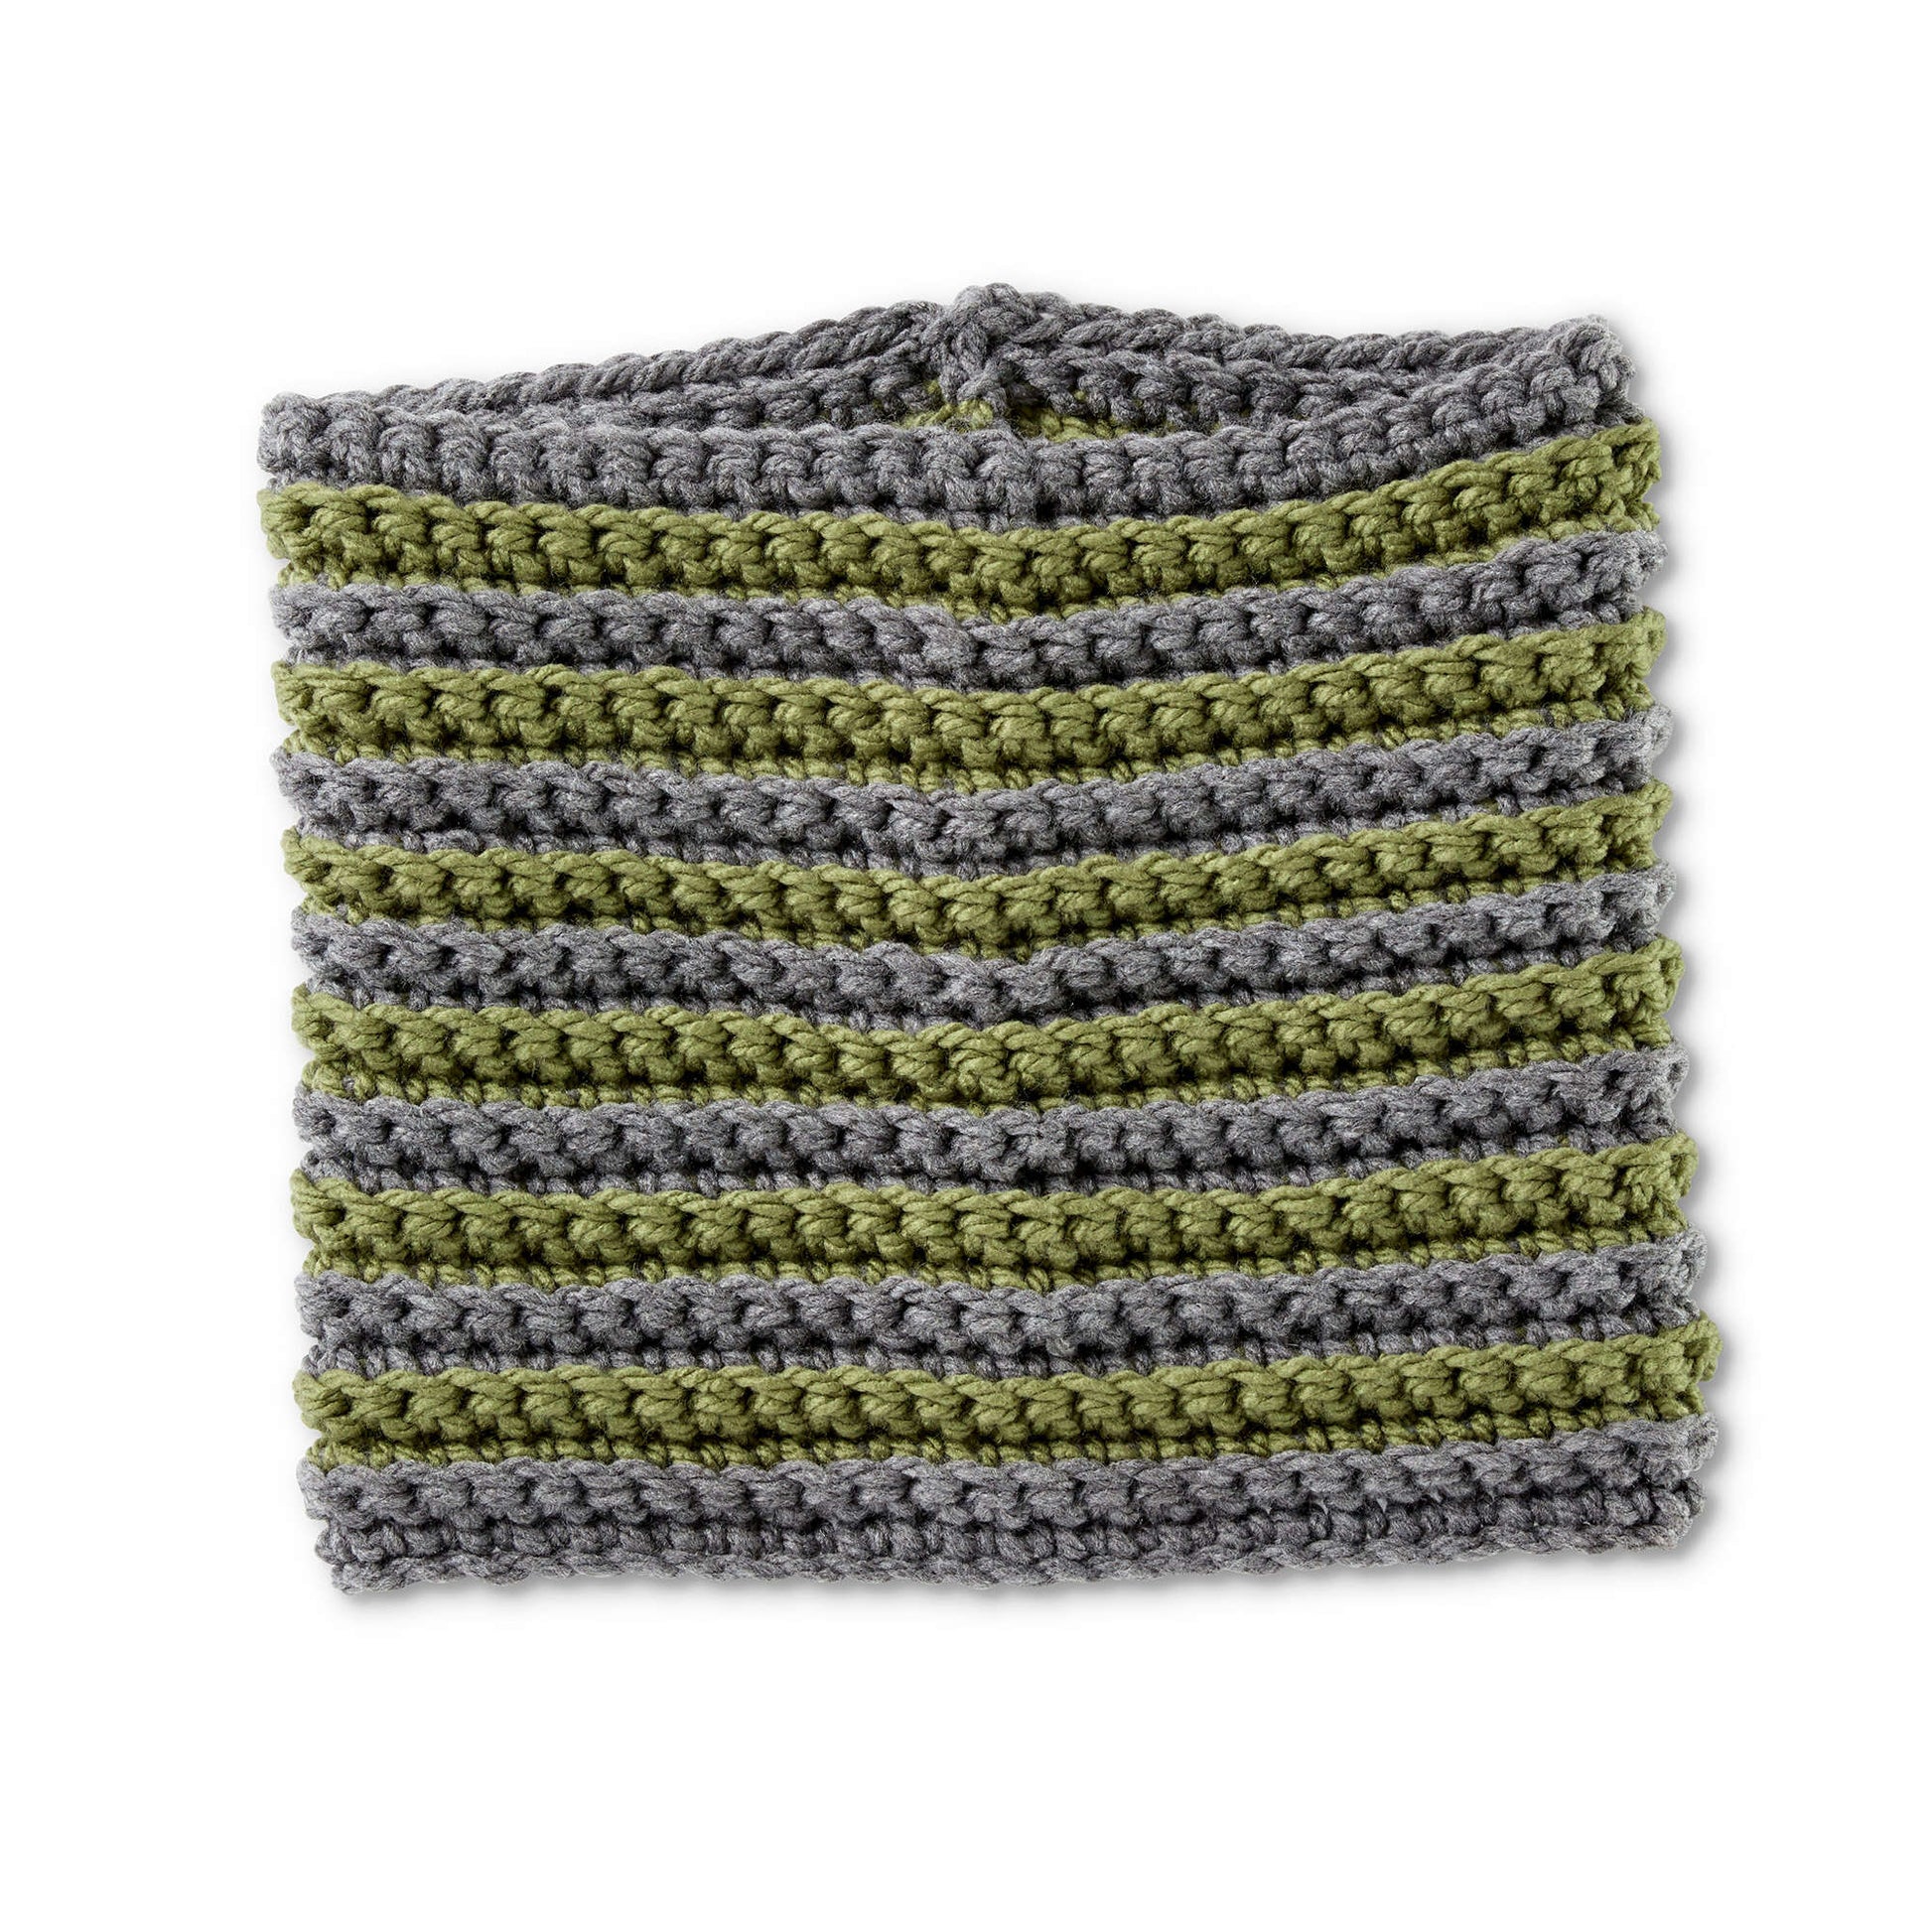 Free Bernat Stripe Across Crochet Cowl Pattern